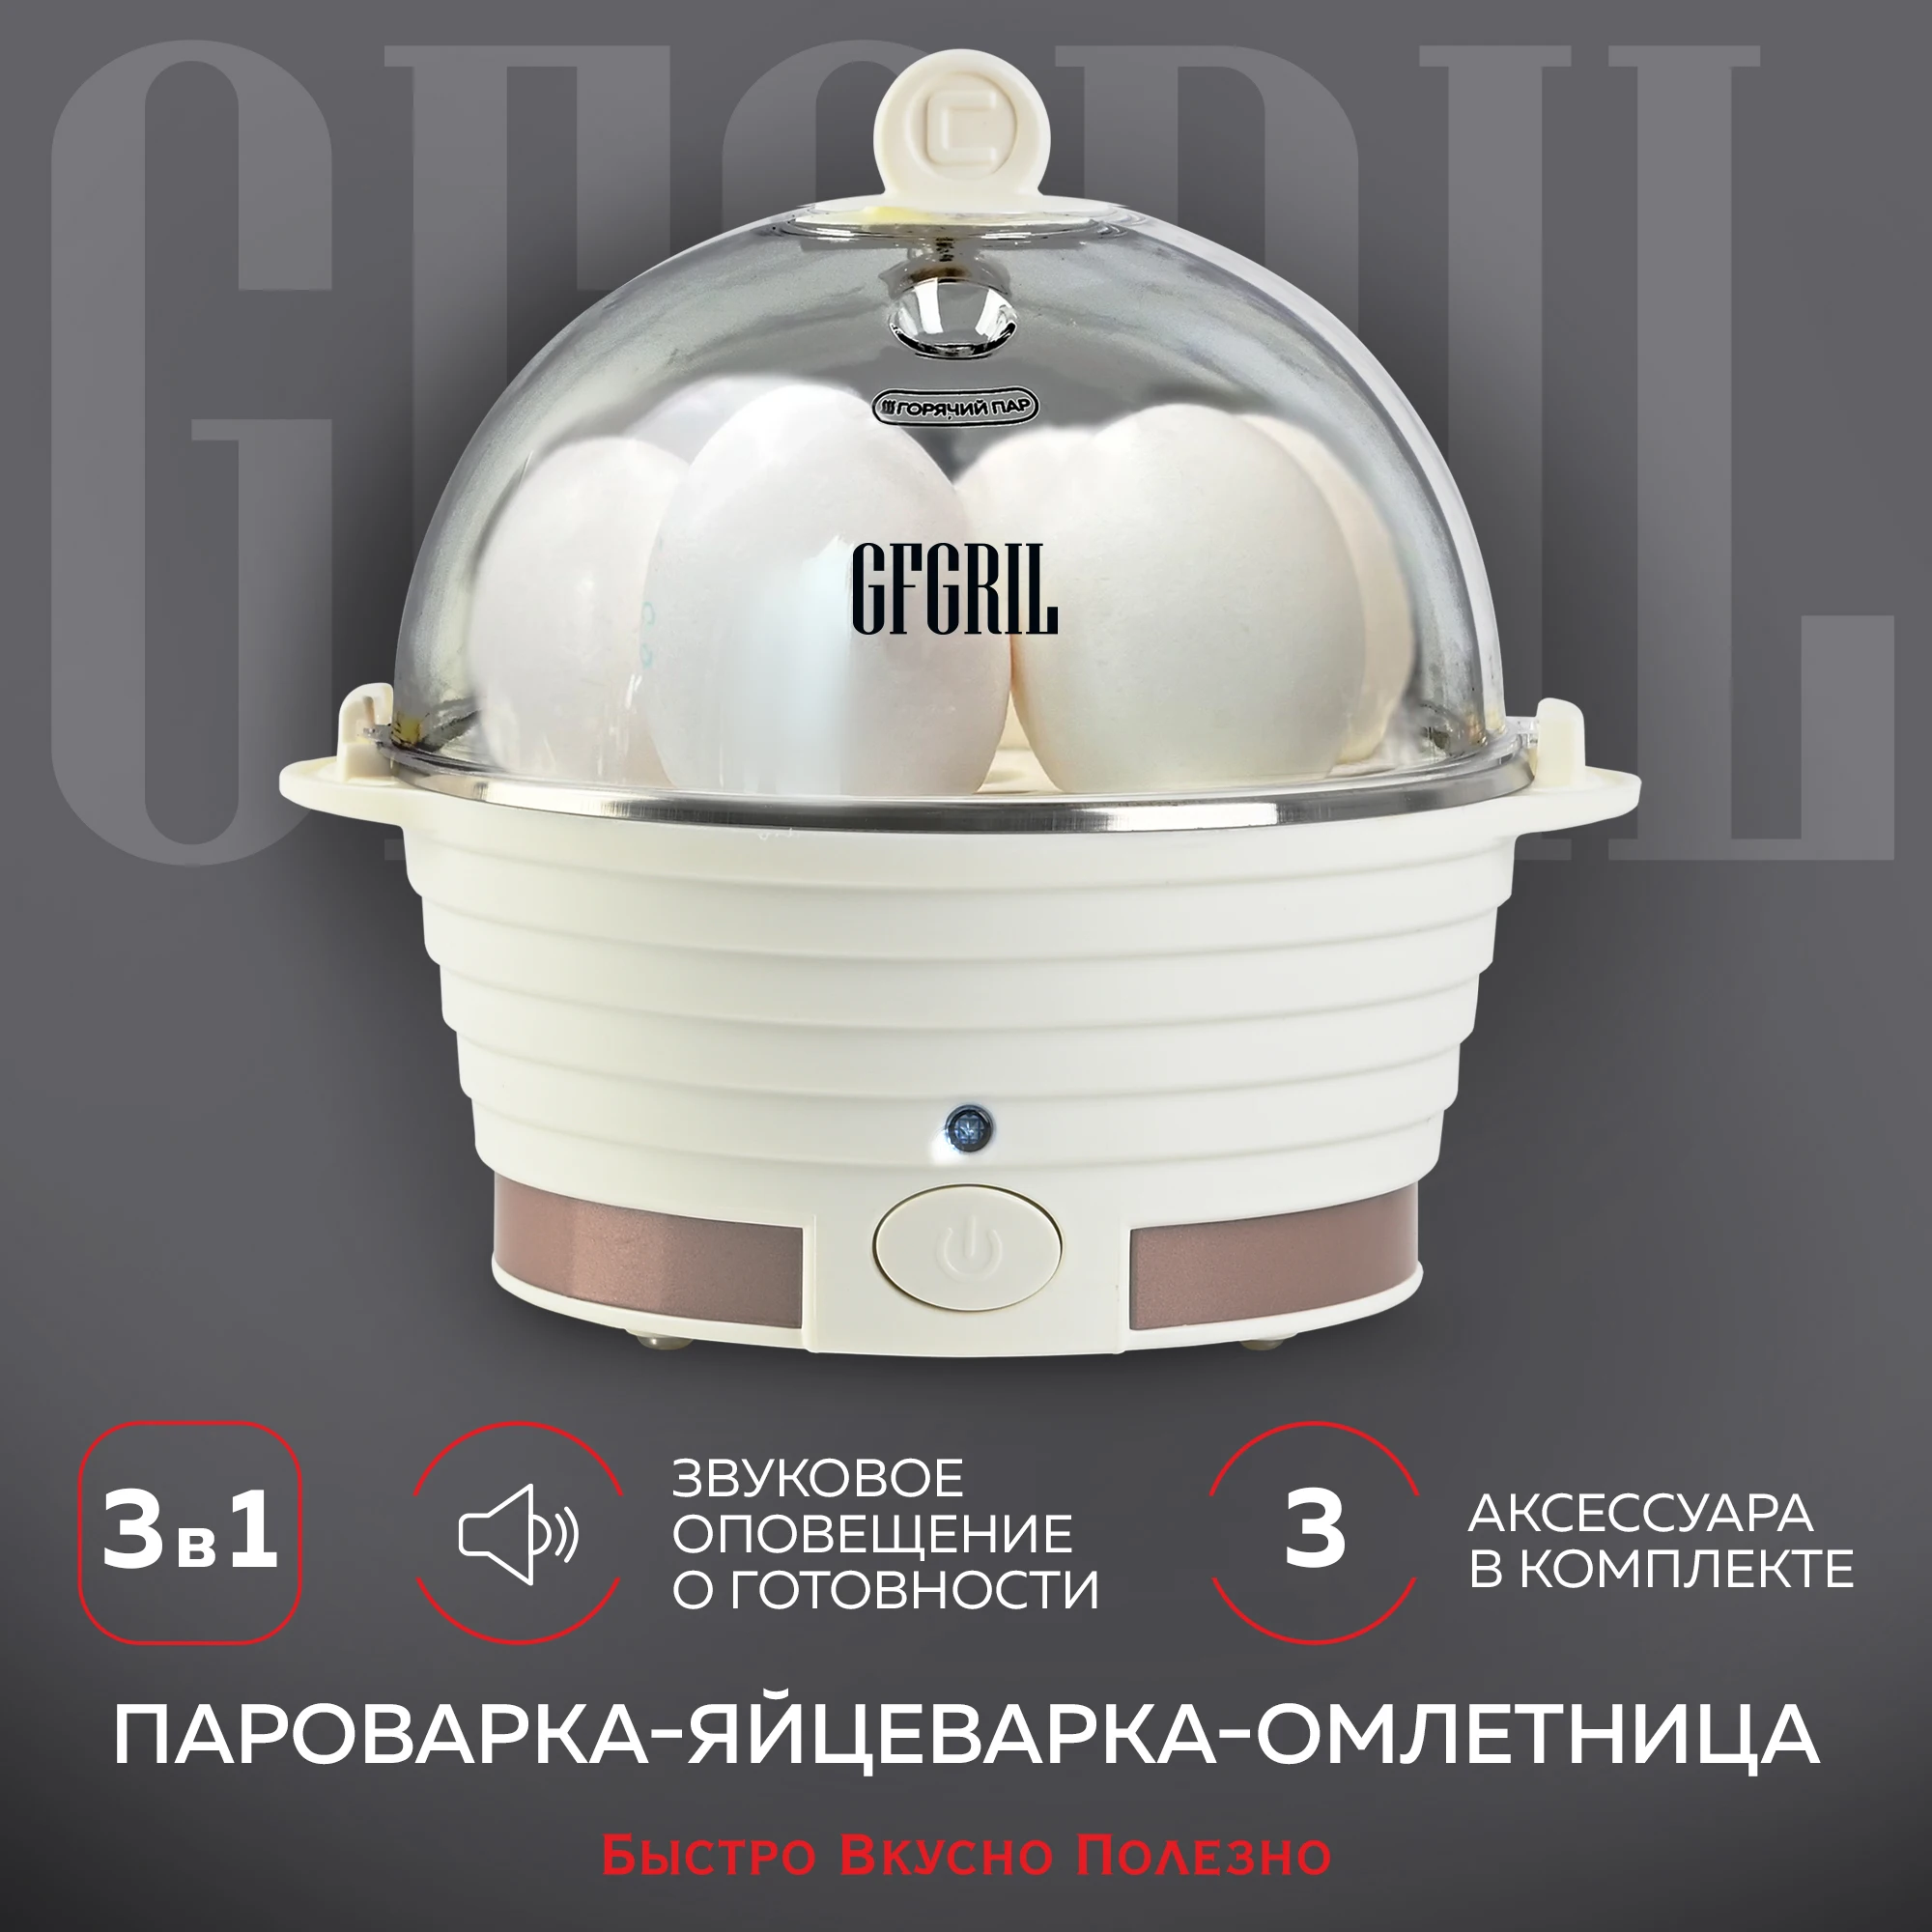 GFGRIL электрическая пароварка-яйцеварка 3 в 1 GFS-3